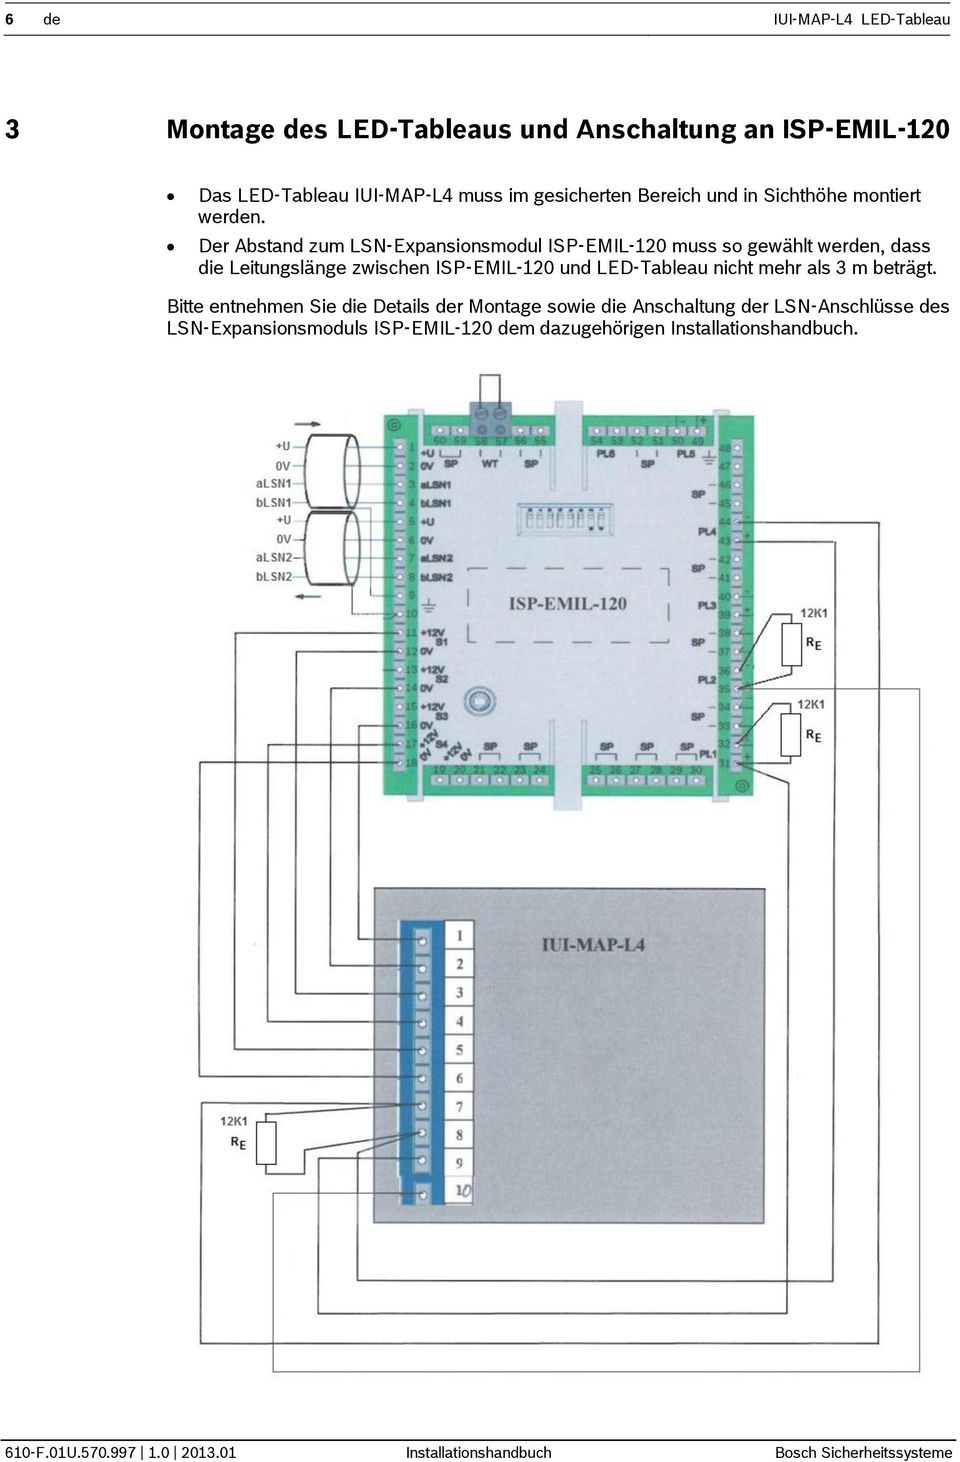 Der Abstand zum LSN-Expansionsmodul ISP-EMIL-120 muss so gewählt werden, dass die Leitungslänge zwischen ISP-EMIL-120 und LED-Tableau nicht mehr